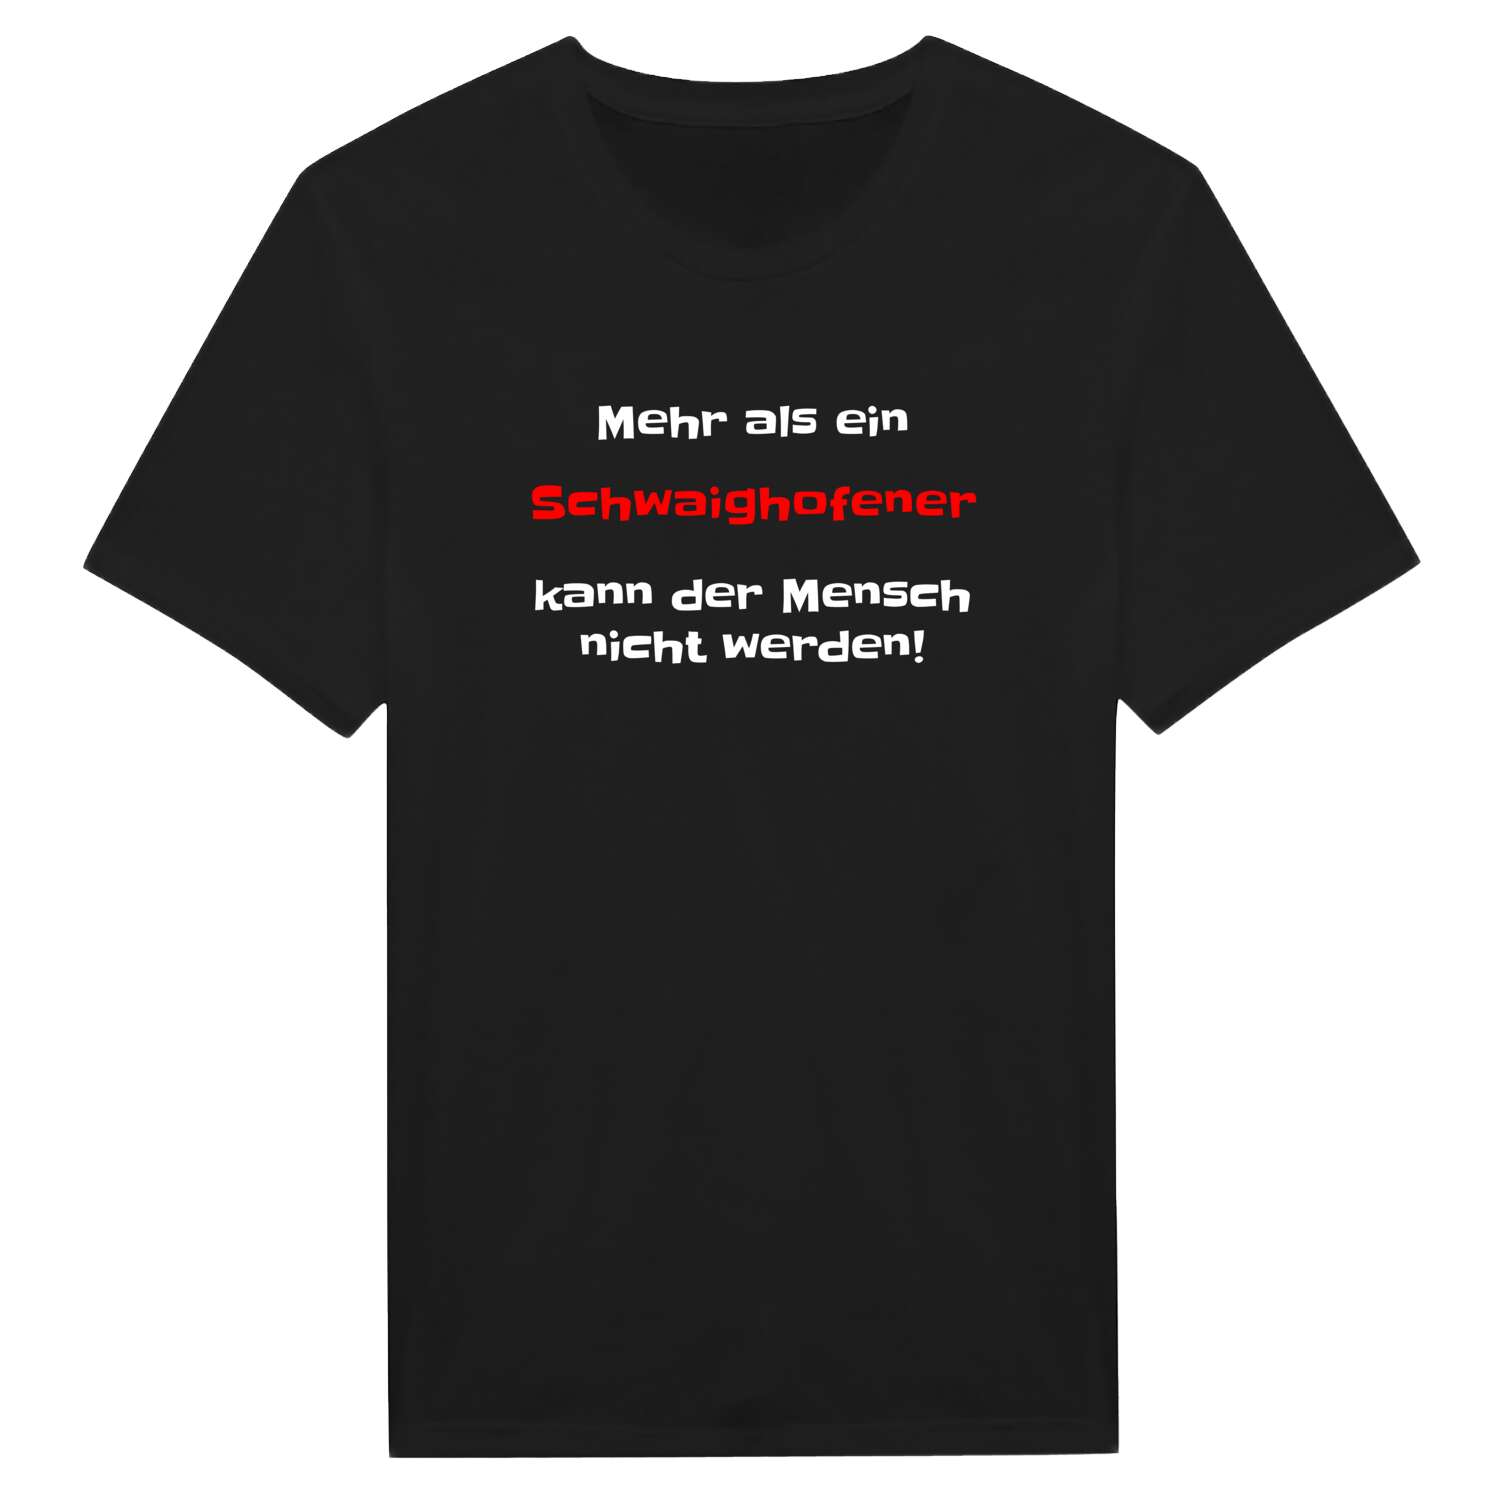 Schwaighofen T-Shirt »Mehr als ein«